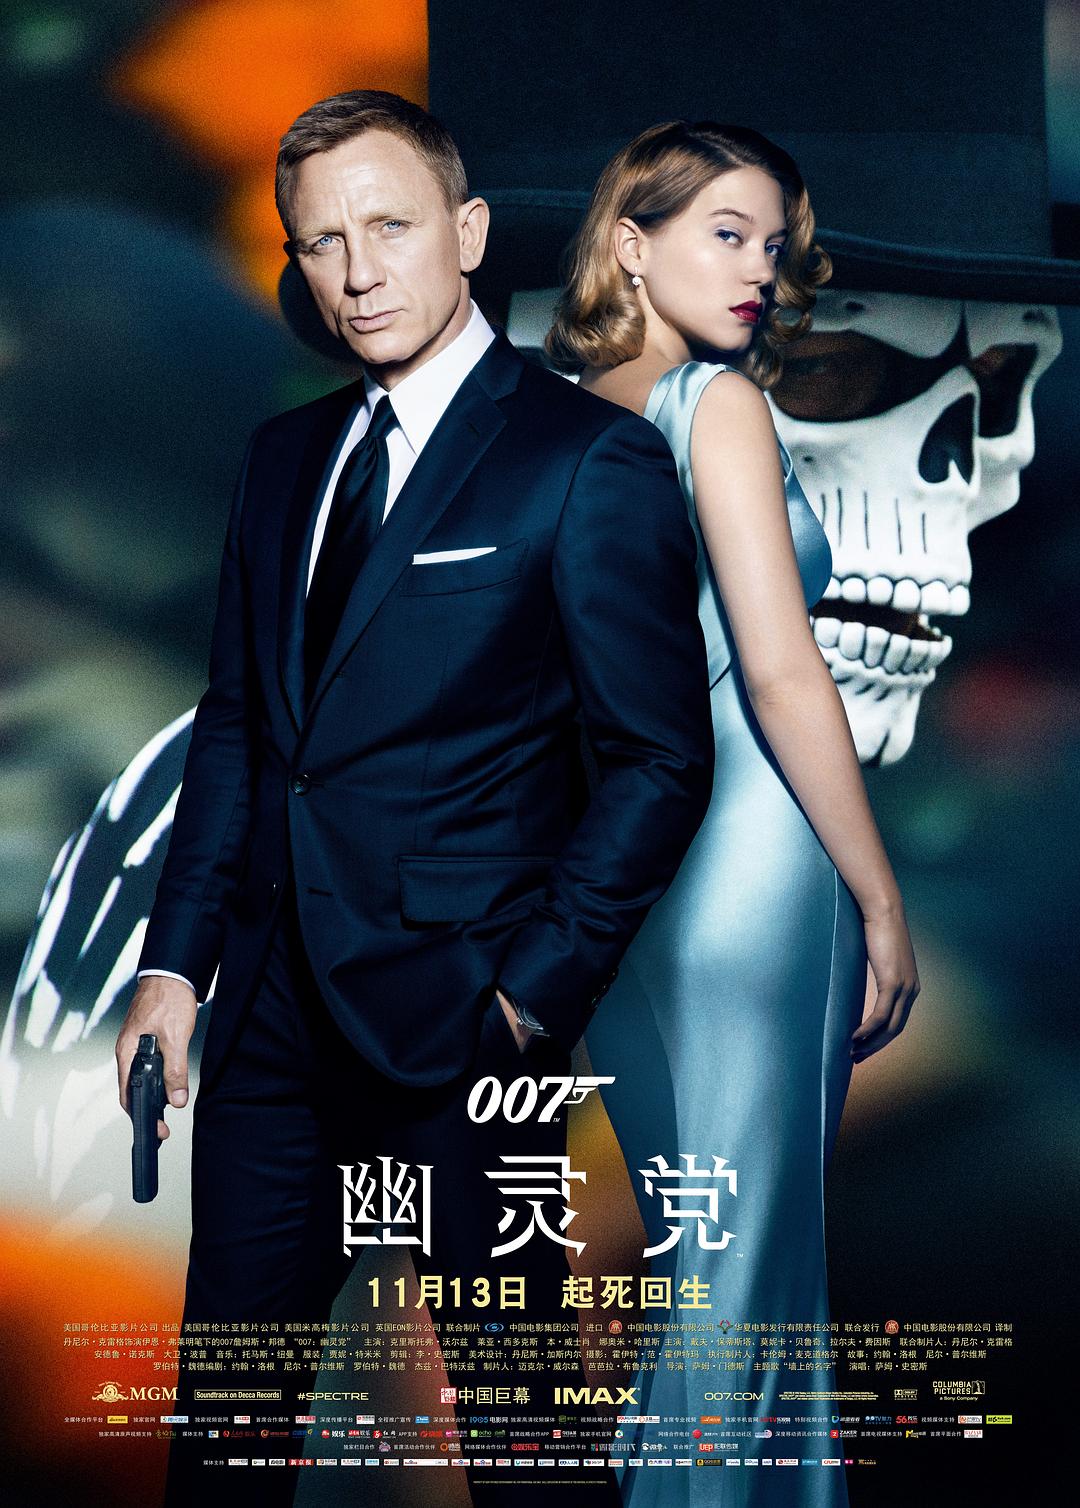 007:鬼魂党/007系列24:大破鬼魂危机 Spectre.2015.2160p.BluRay.x264.8bit.SDR.DTS-HD.MA.7.1-SWTYBLZ 60.69GB-1.png